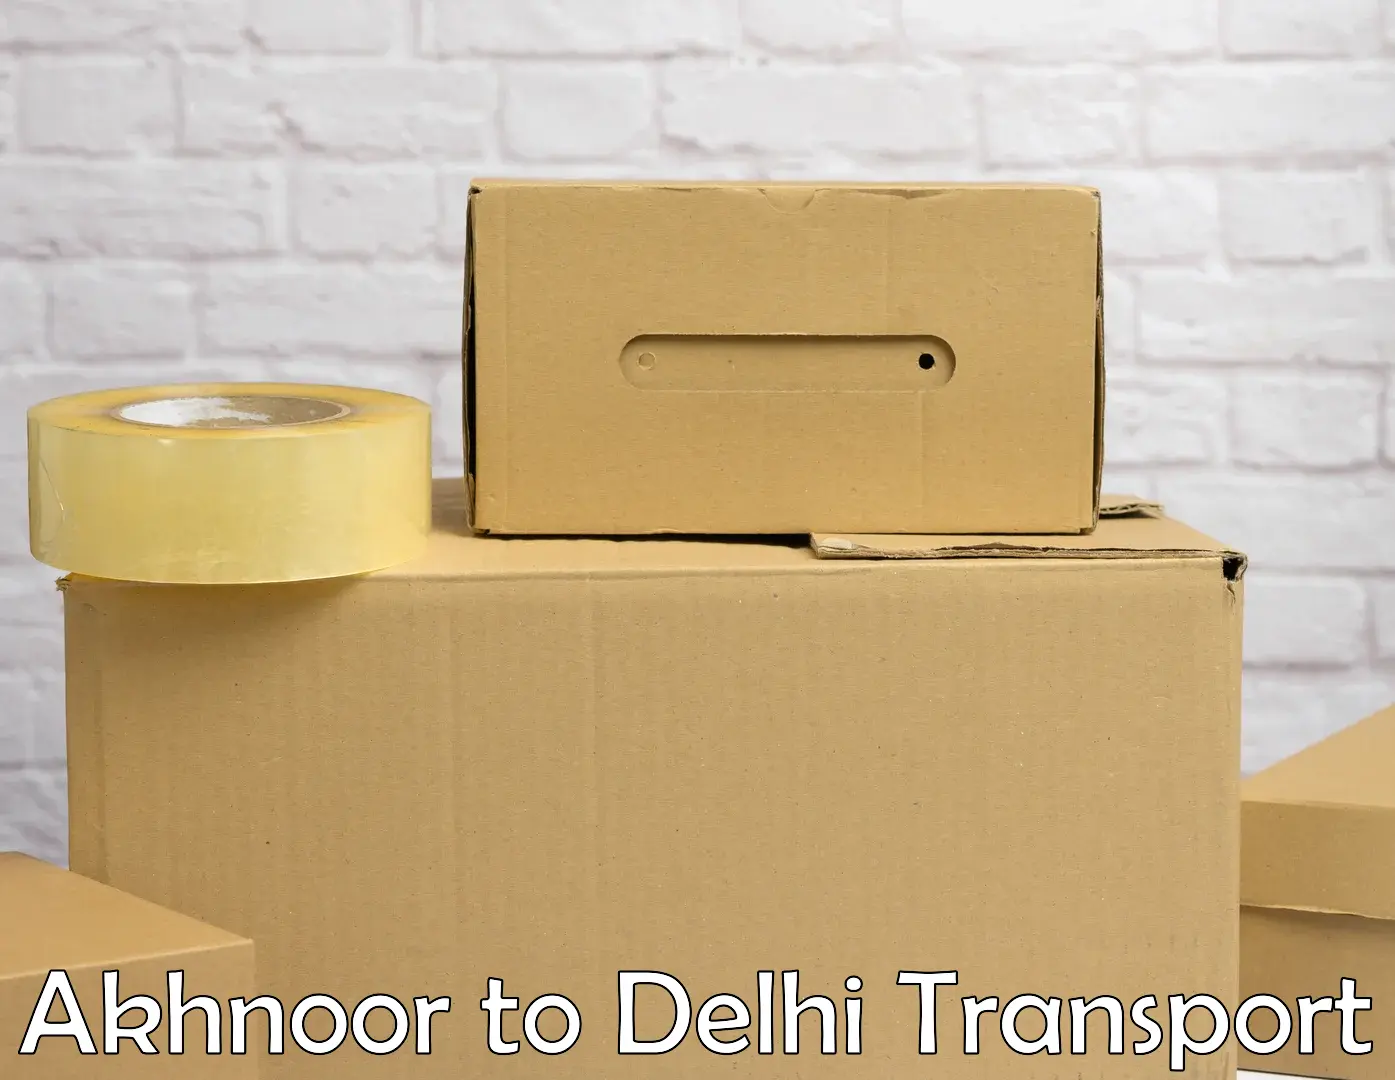 Vehicle transport services Akhnoor to Delhi